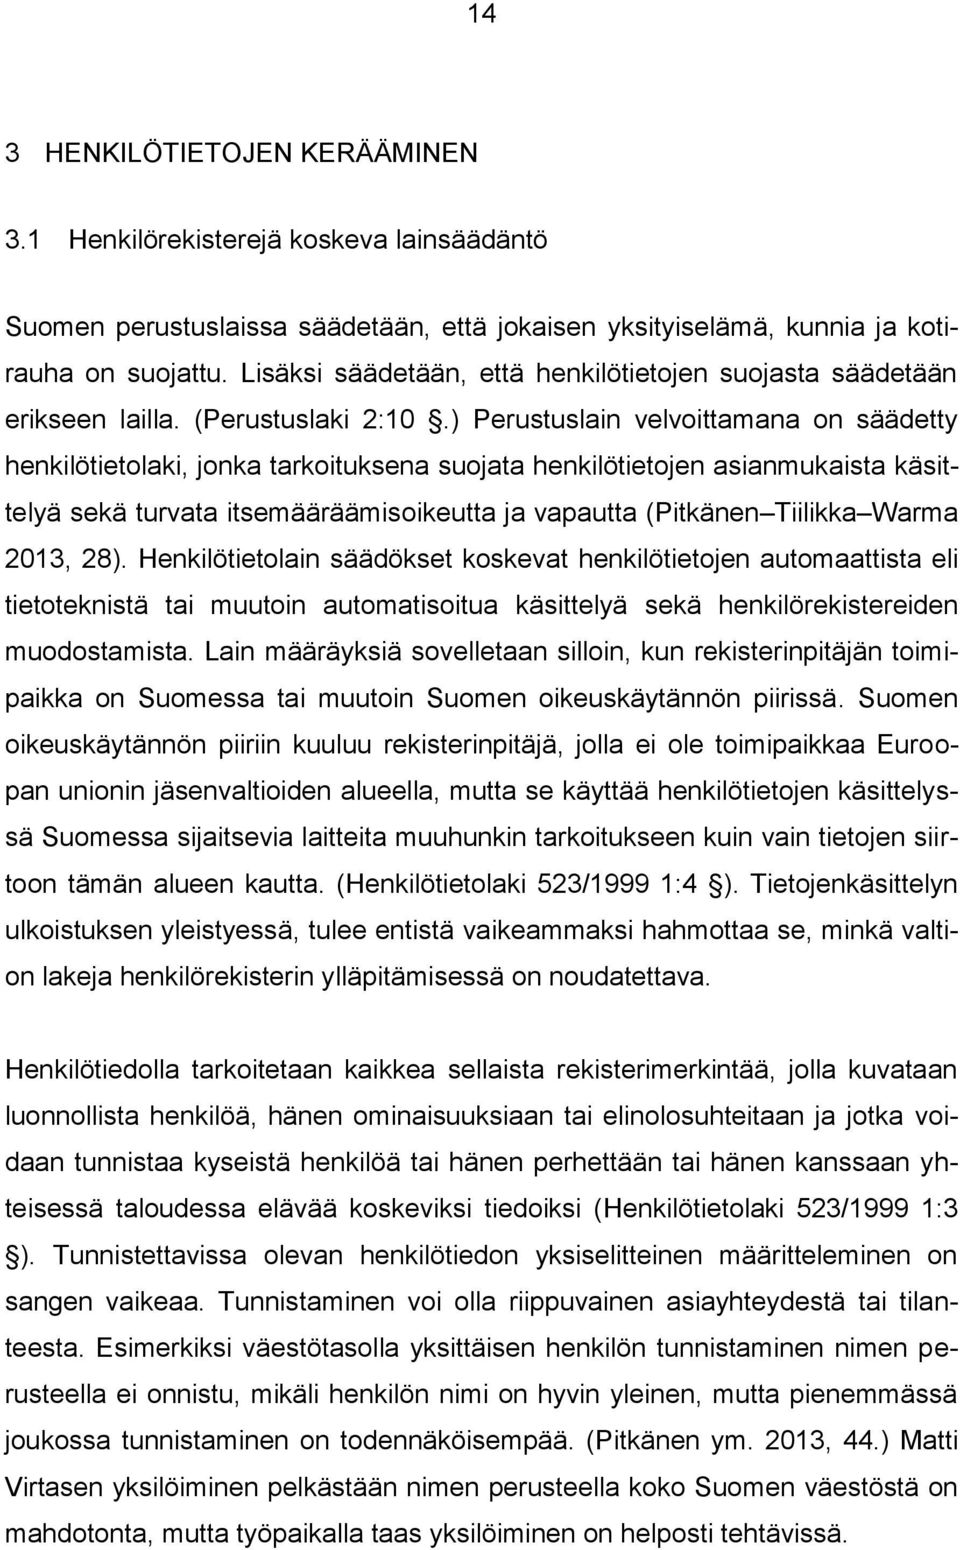 HENKILÖTIETOJEN KÄSITTELY JA IDENTITEETTIVARKAUS - PDF Ilmainen lataus